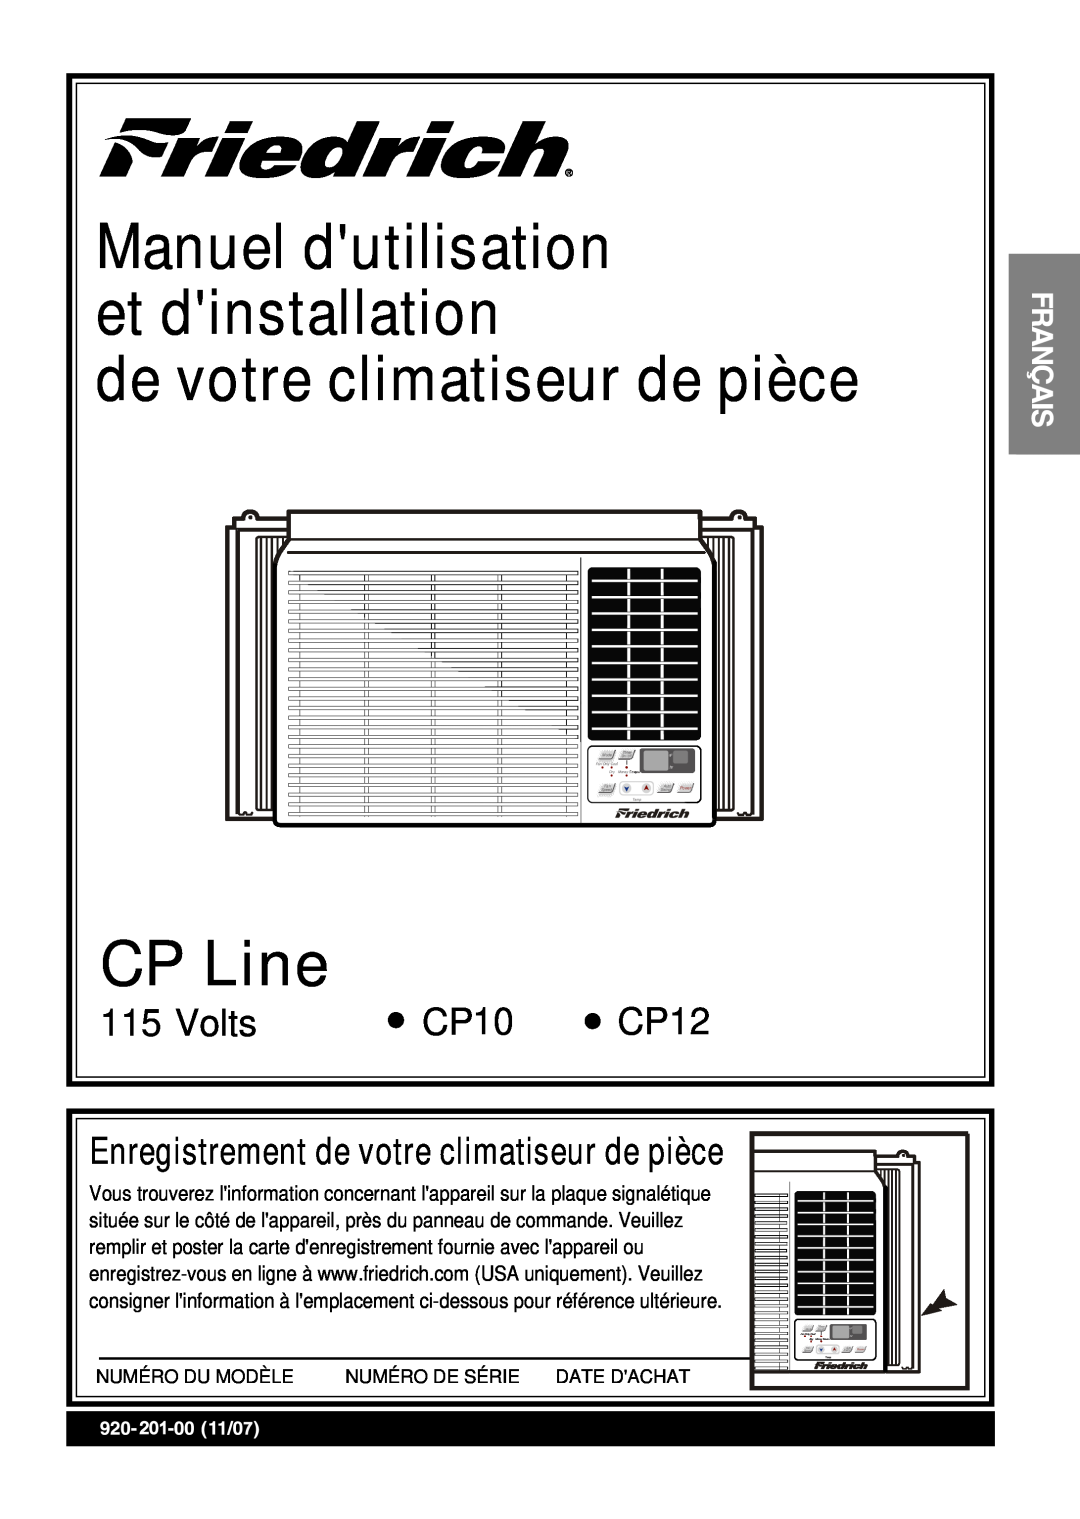 Friedrich CP10 de votre climatiseur de pièce, CP Line, Volts, Français, Manuel dutilisation et dinstallation, CP12, 2017 